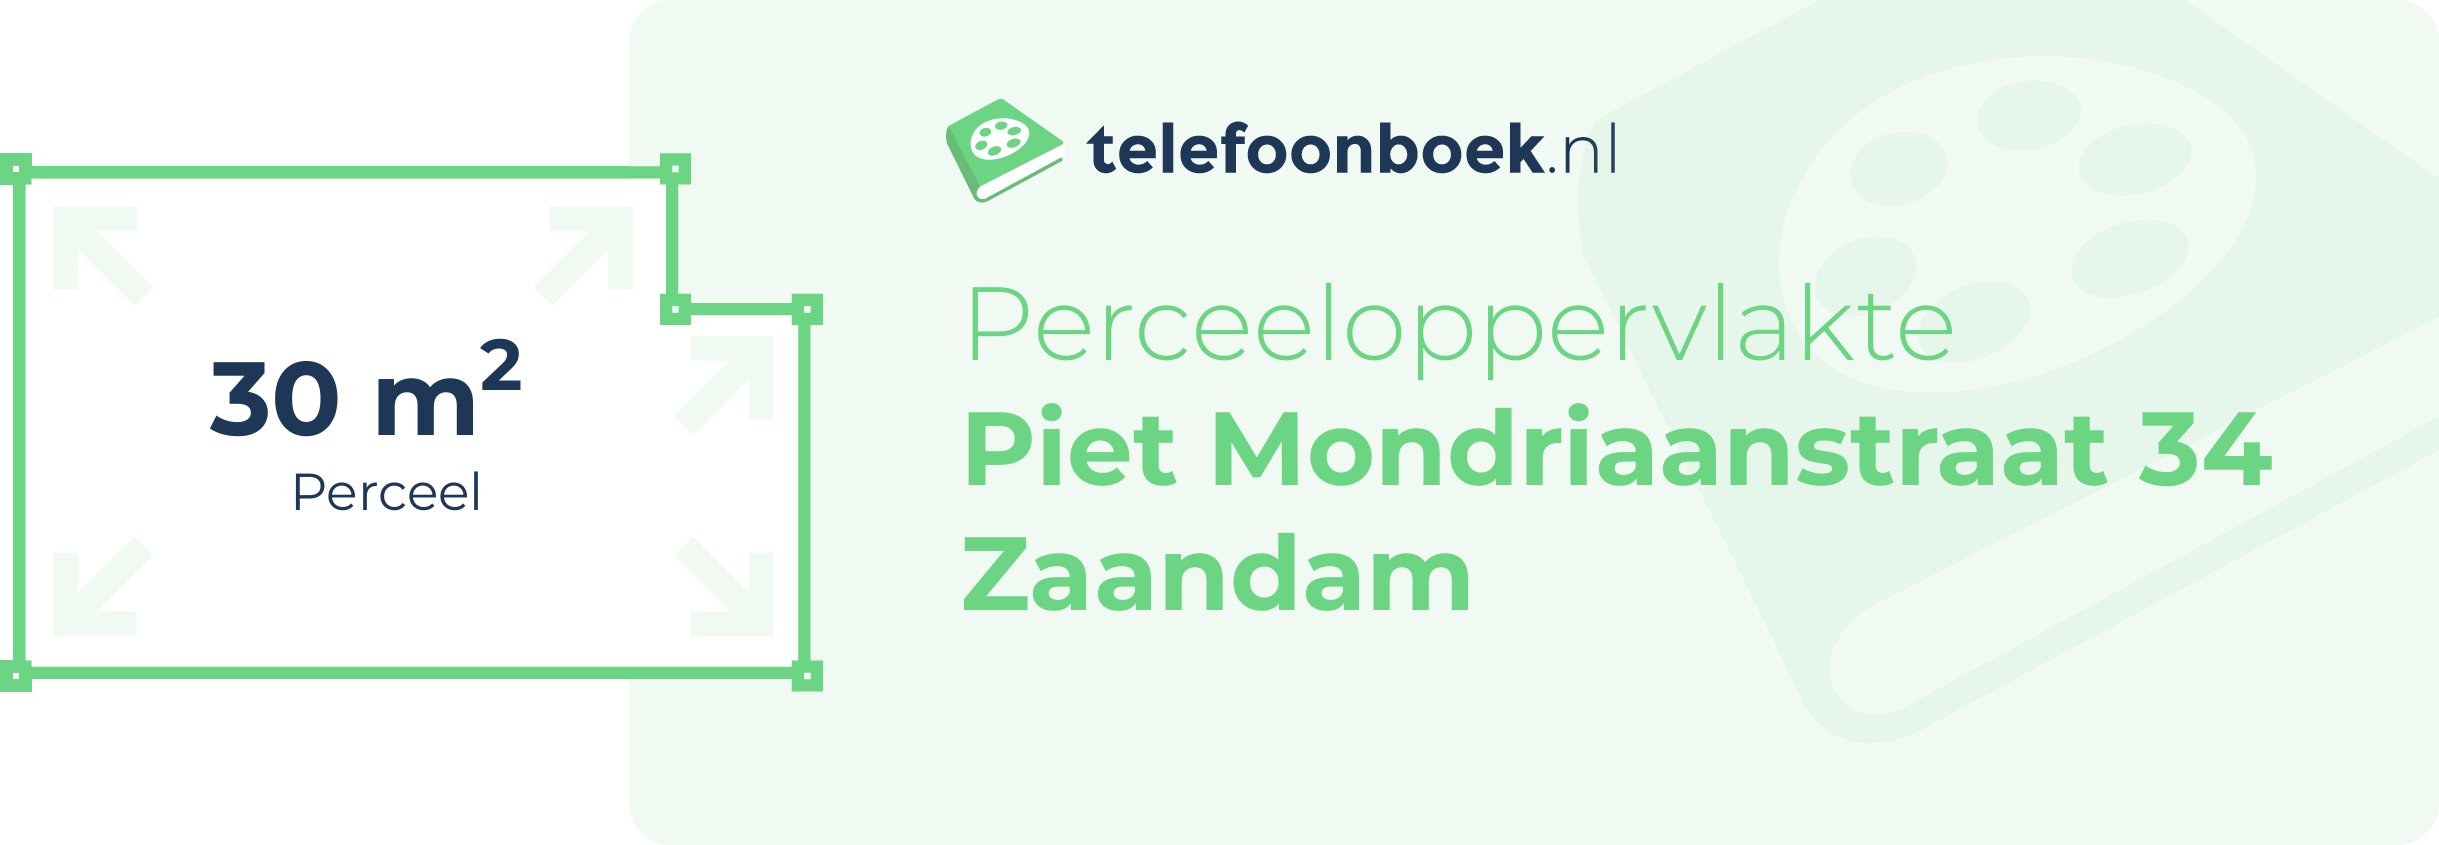 Perceeloppervlakte Piet Mondriaanstraat 34 Zaandam